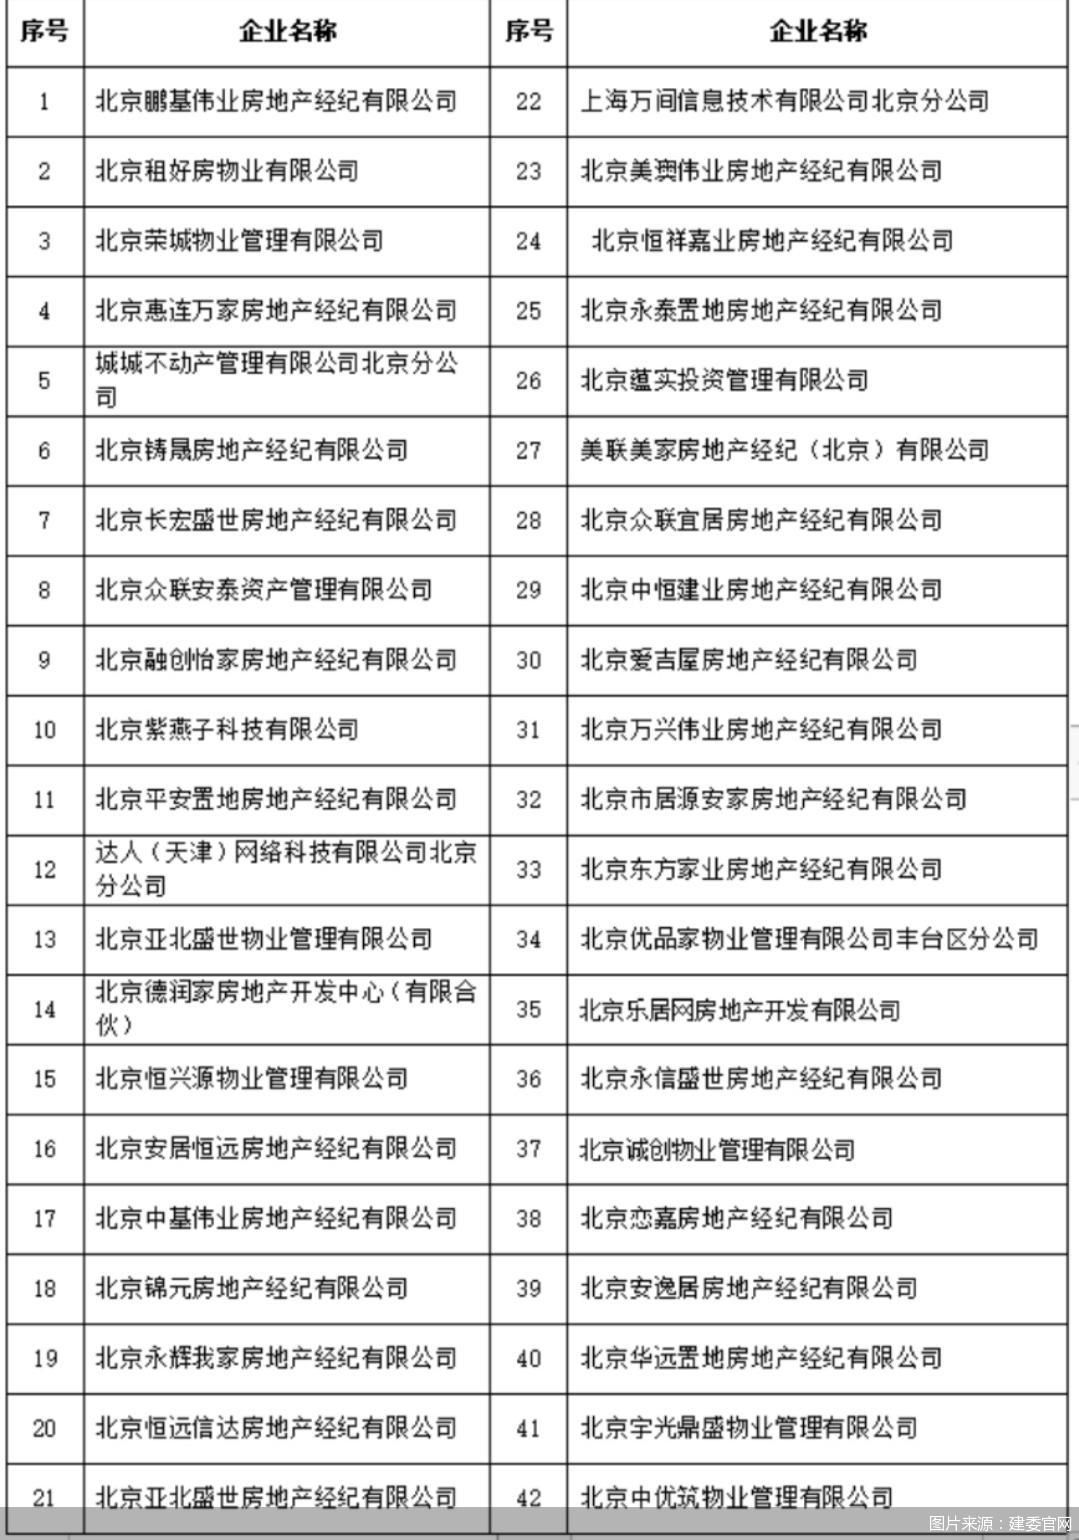 北京发布第二批重点房屋租赁企业 涉及北京彭几叶巍等42家企业